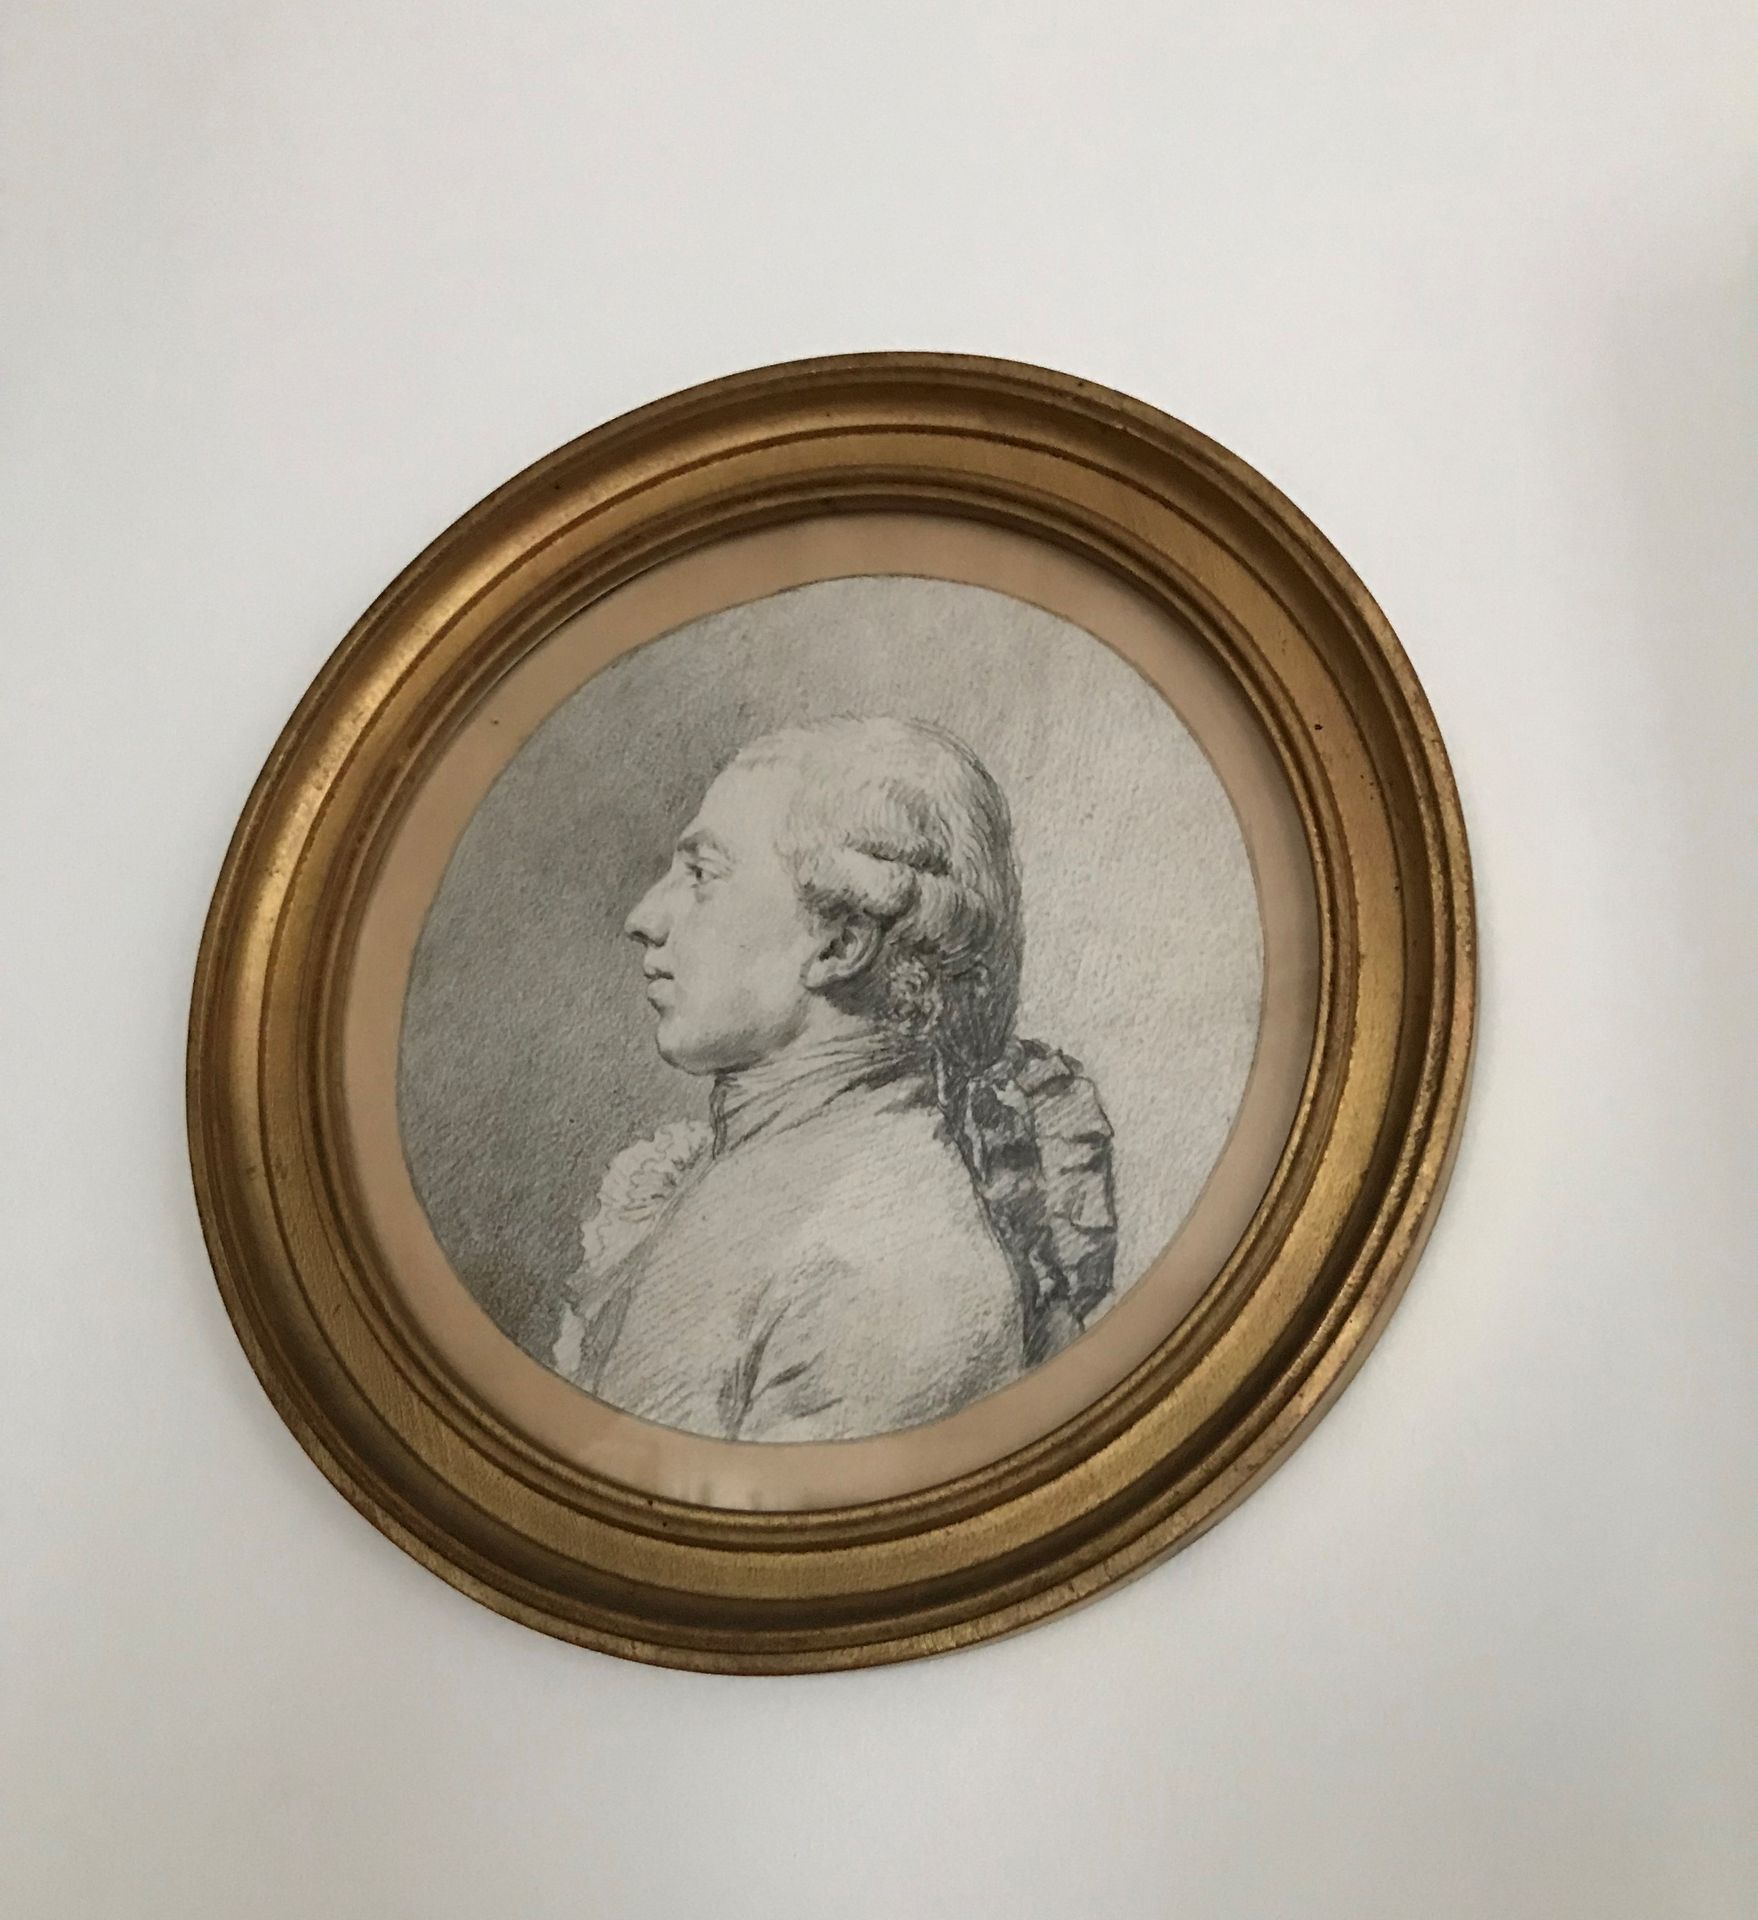 Ecole Française du XVIIIème siècle 
Portrait d'homme
Pierre noire
D. 16 cm.